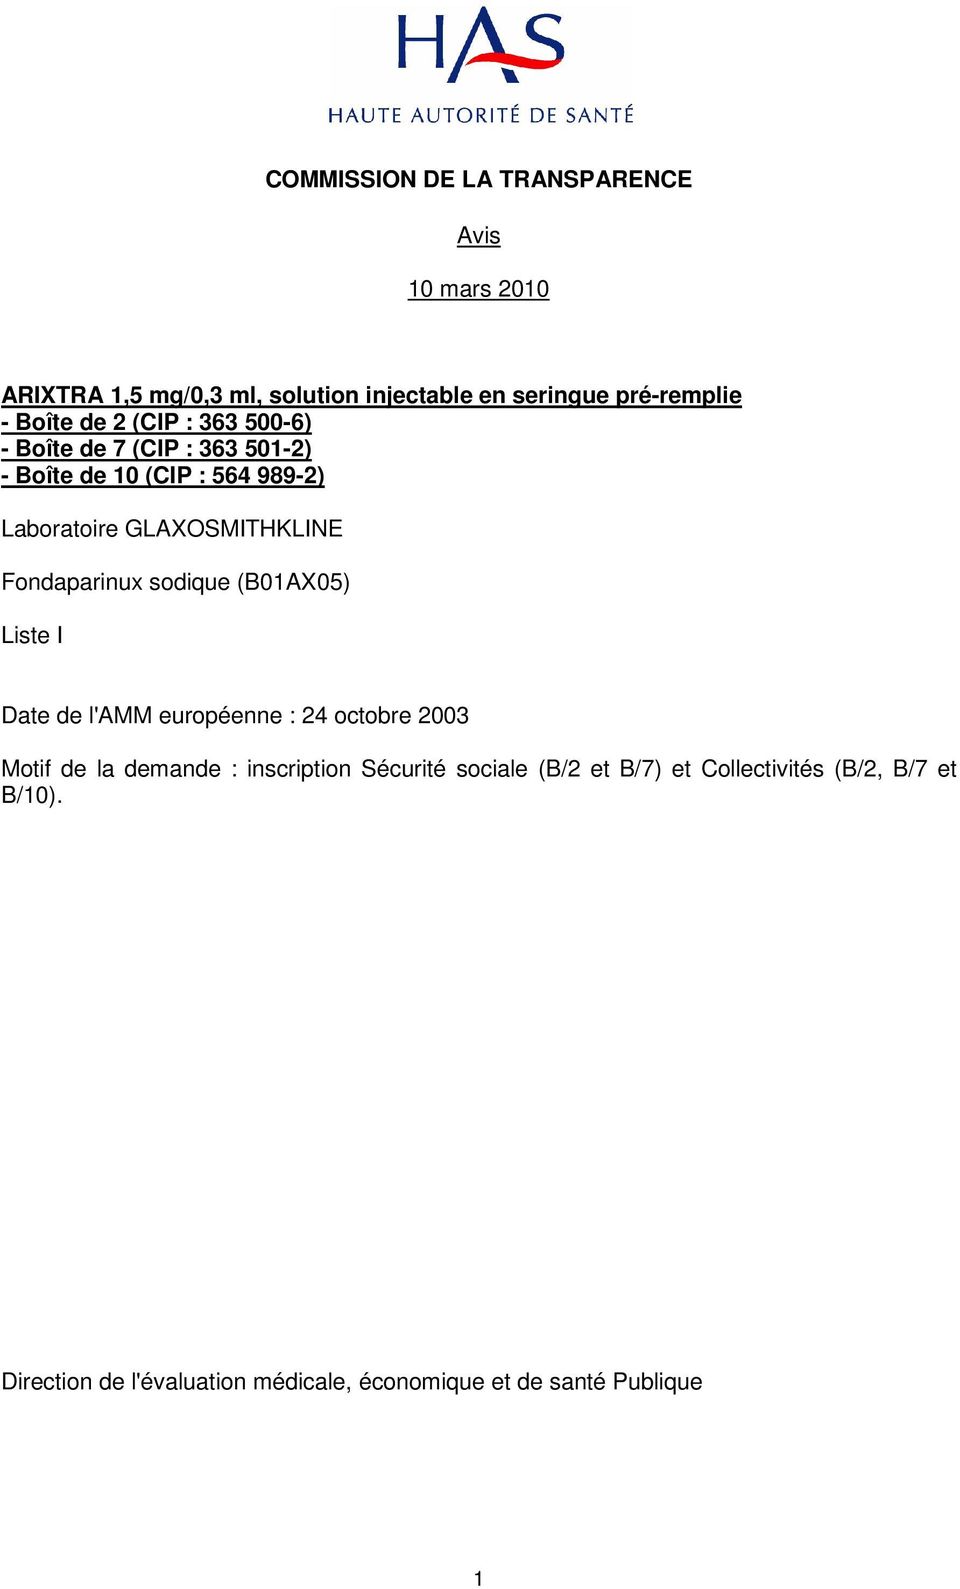 Fondaparinux sodique (B01AX05) Liste I Date de l'amm européenne : 24 octobre 2003 Motif de la demande : inscription